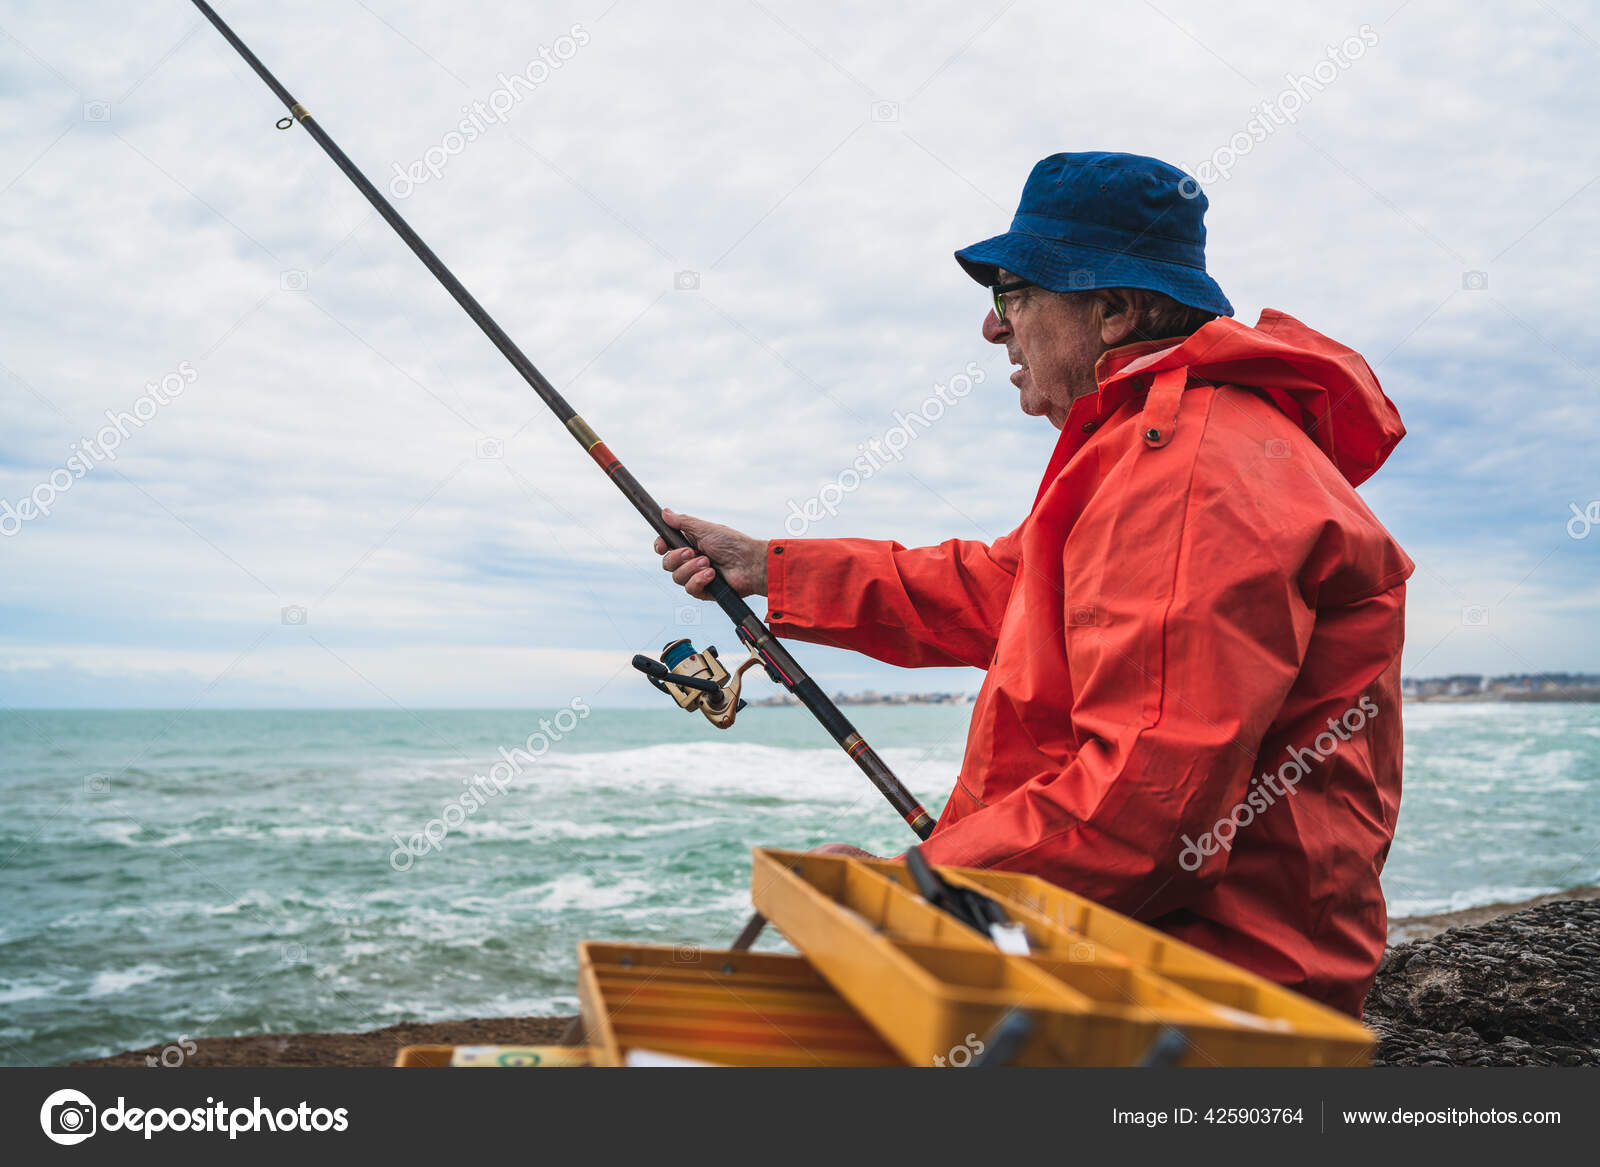 Old man fishing in the sea. — Stock Photo © nicomenijes #425903764